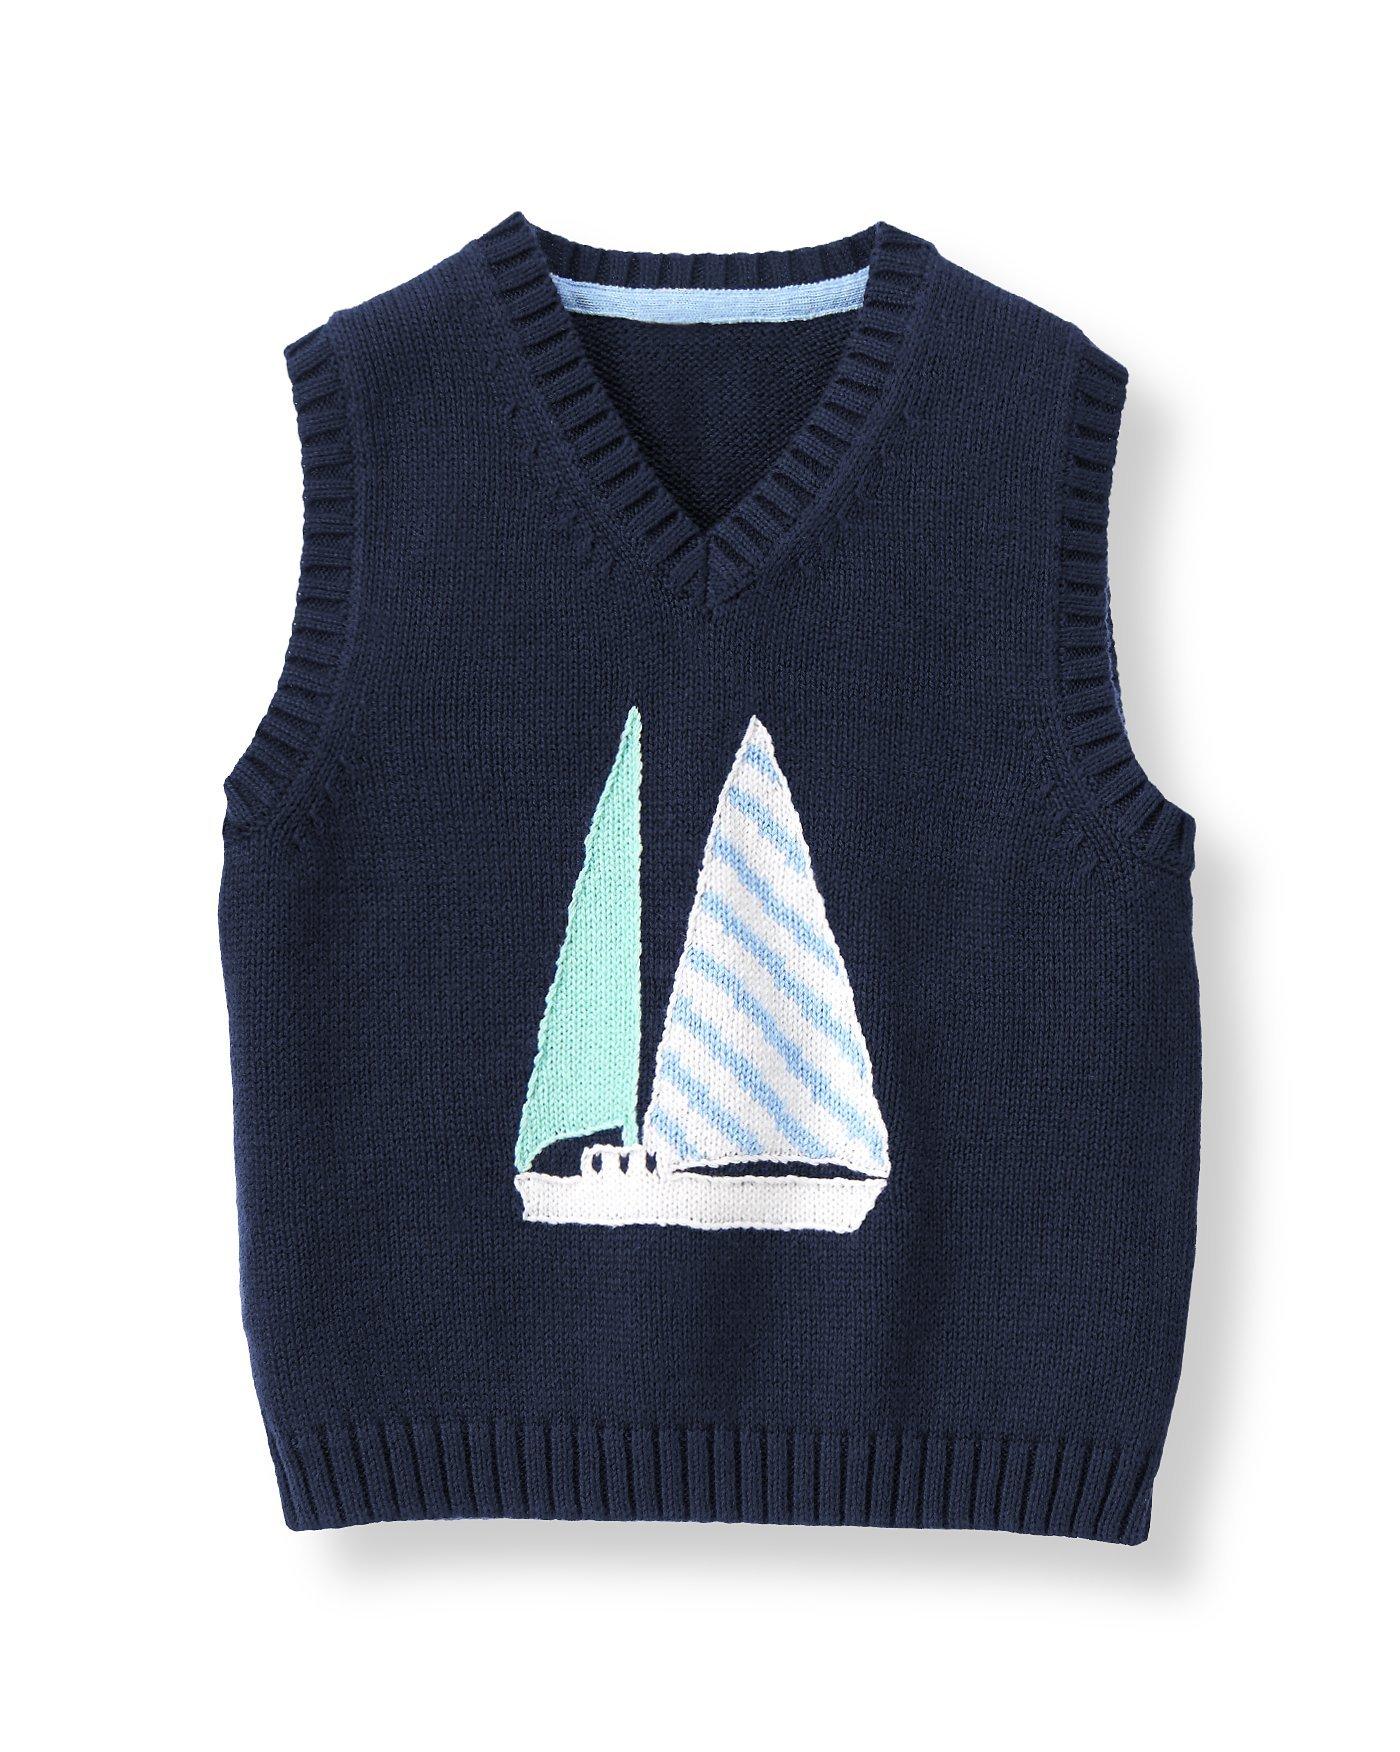 Sailboat Sweater Vest image number 0